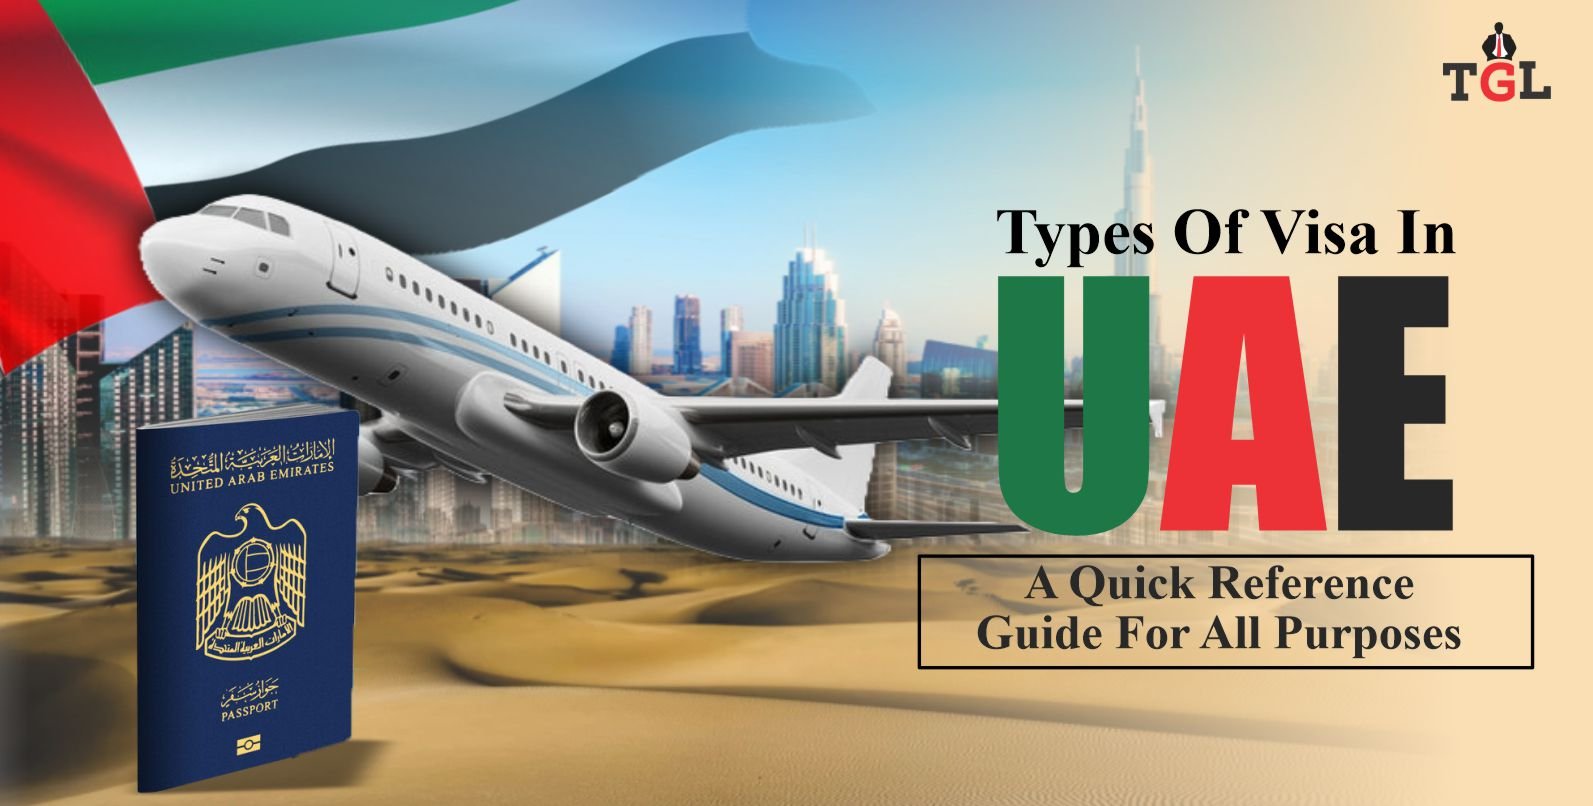 Types of Visa in UAE